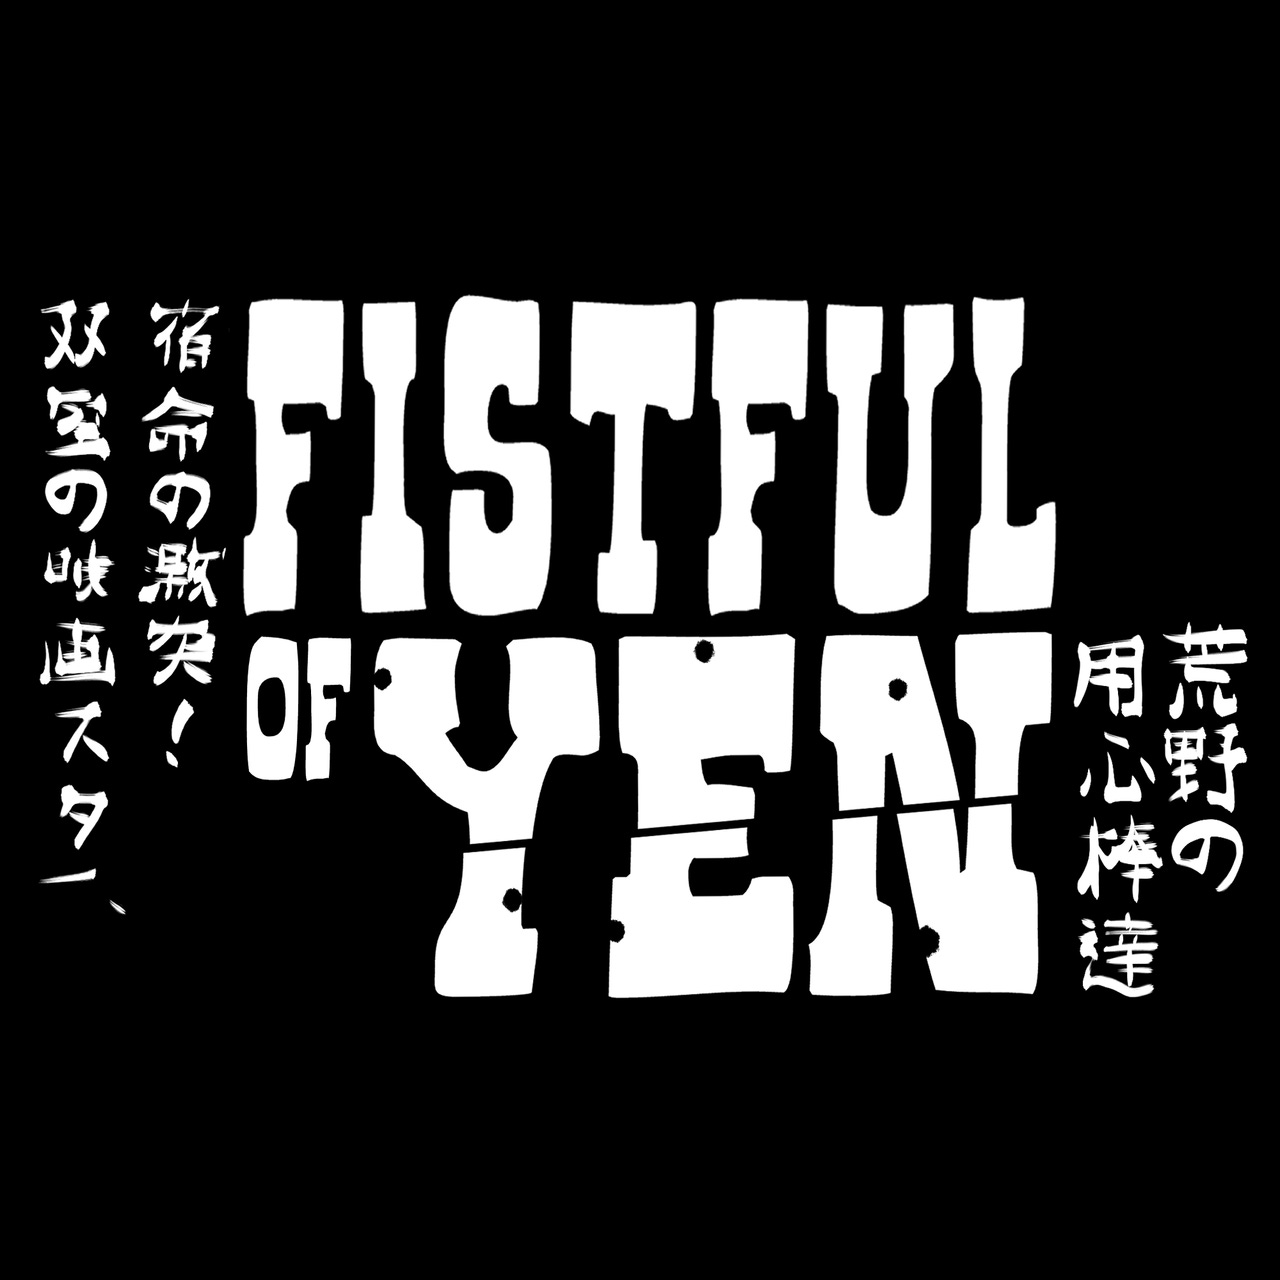 Artwork for Fistful of Yen